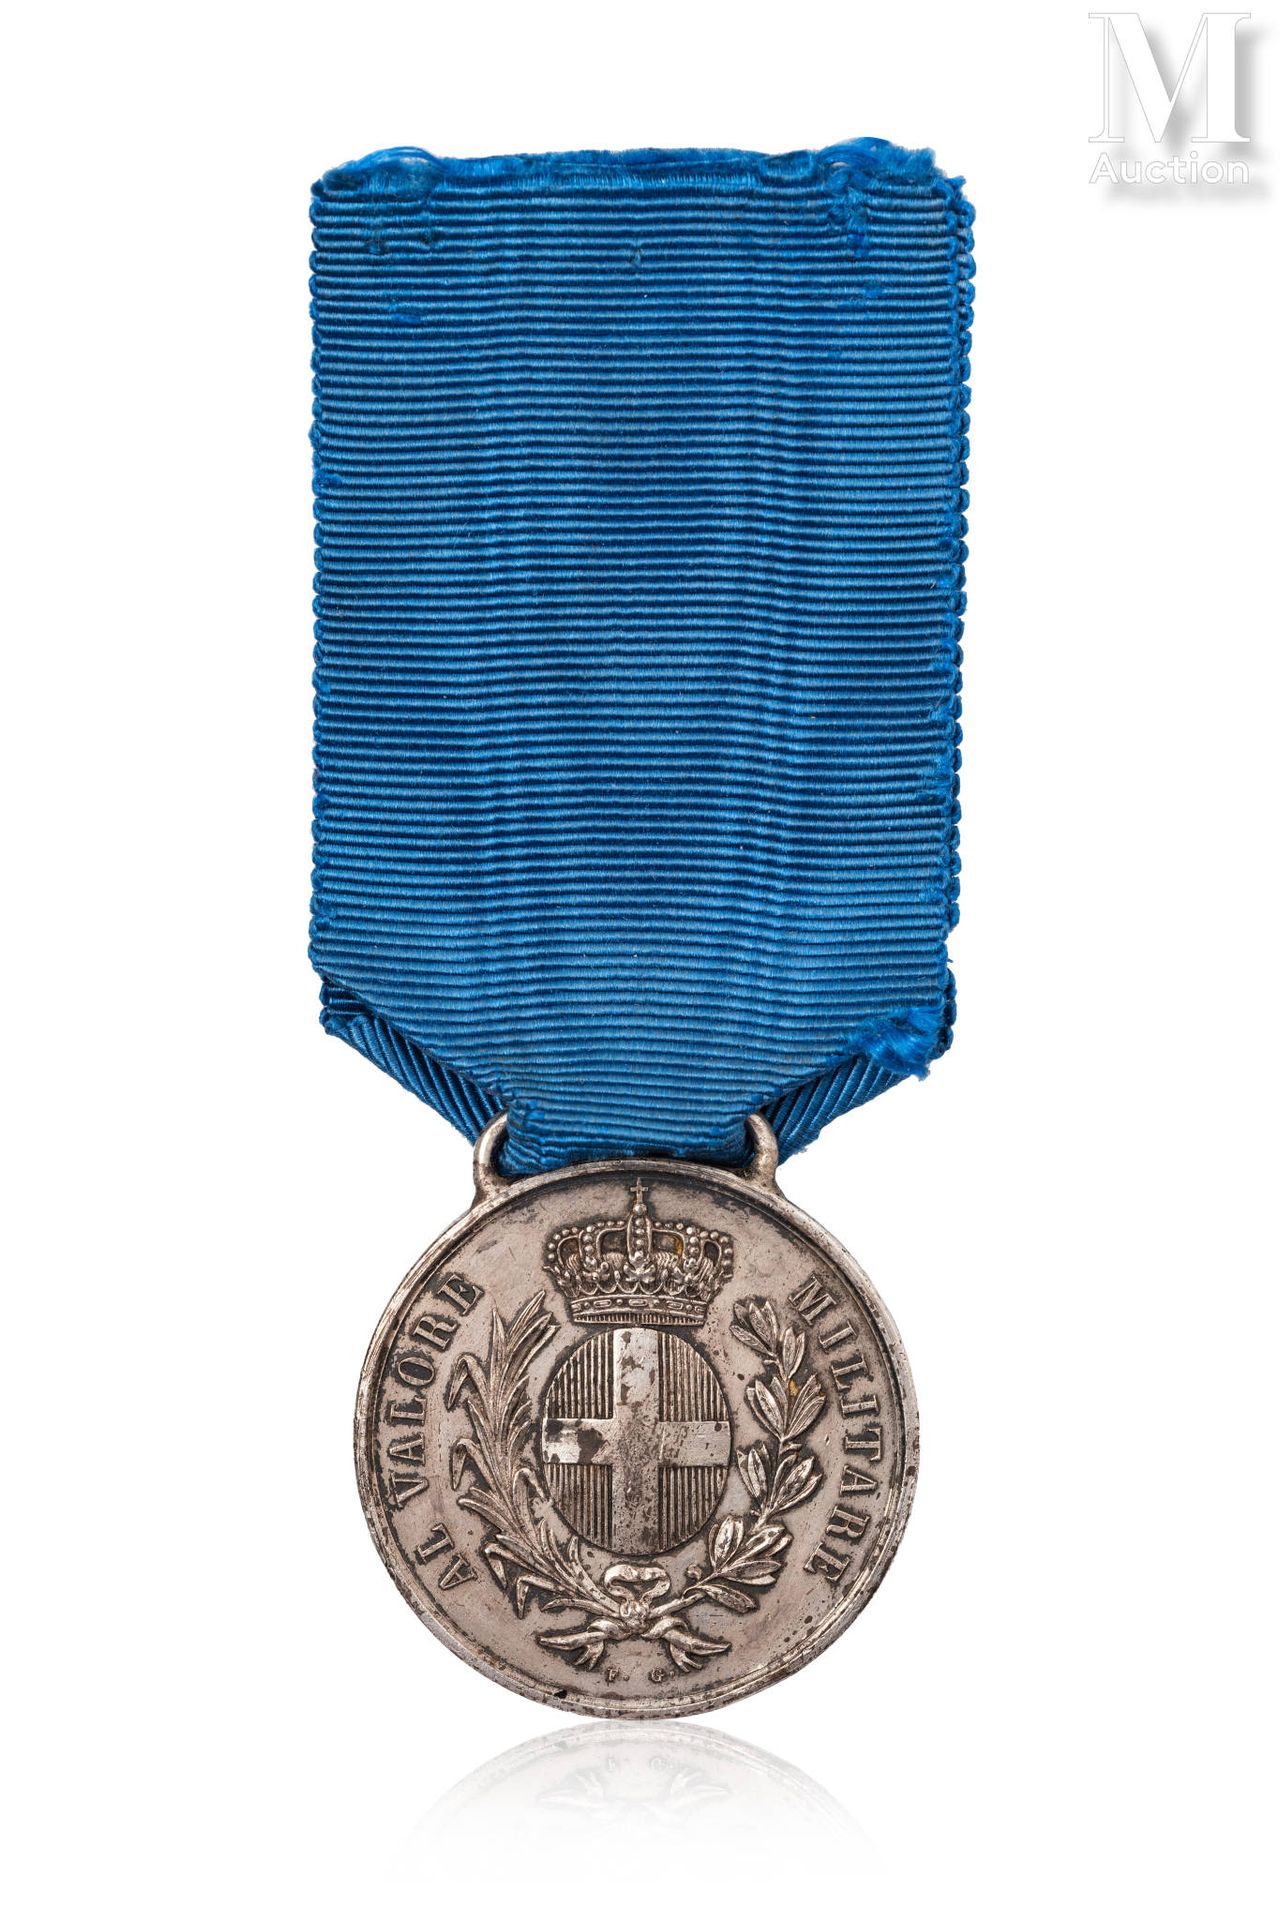 ITALIE - SARDAIGNE Rare médaille de la Valeur Militaire Sarde en argent, gravée &hellip;